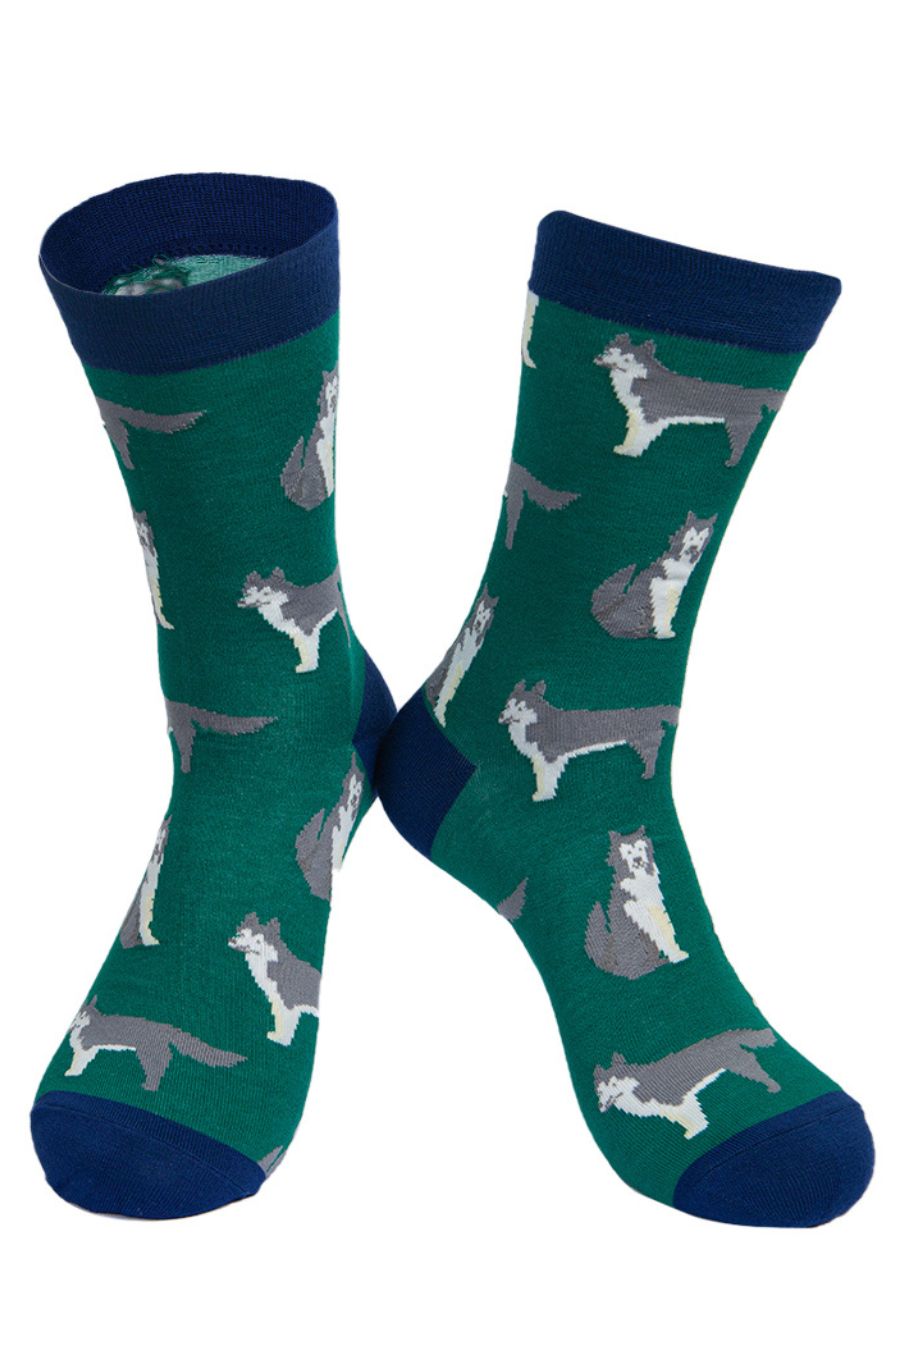 men's green husky dog socks made from bamboo